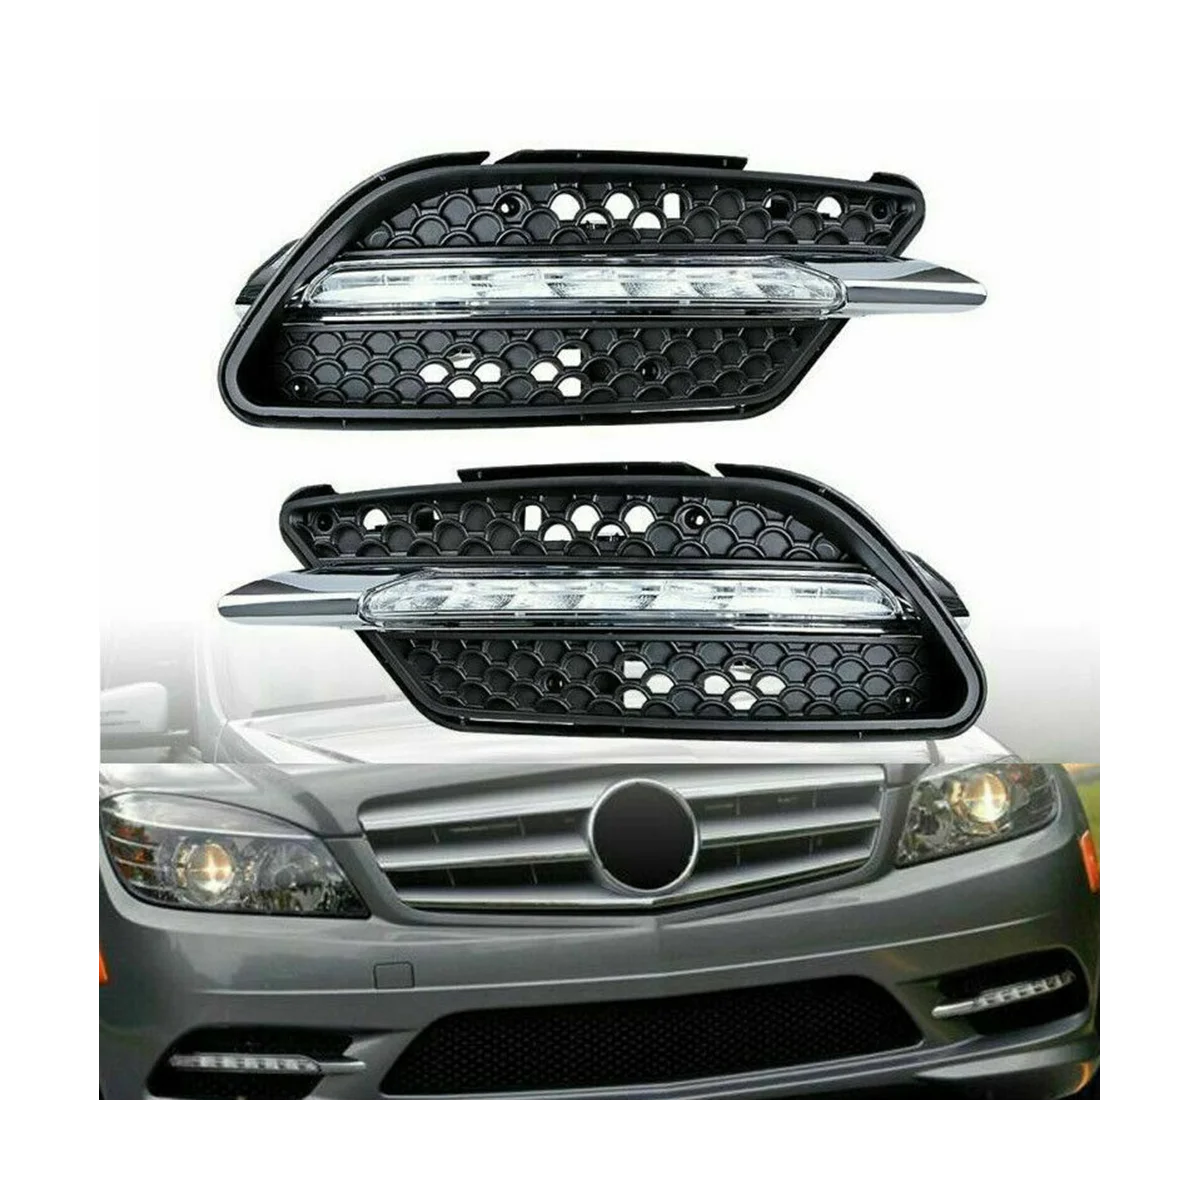 Автомобильная светодиодная противотуманная фара DRL дневного света для Mercedes Benz W204 C Class C300 2008-2011 Слева - 2